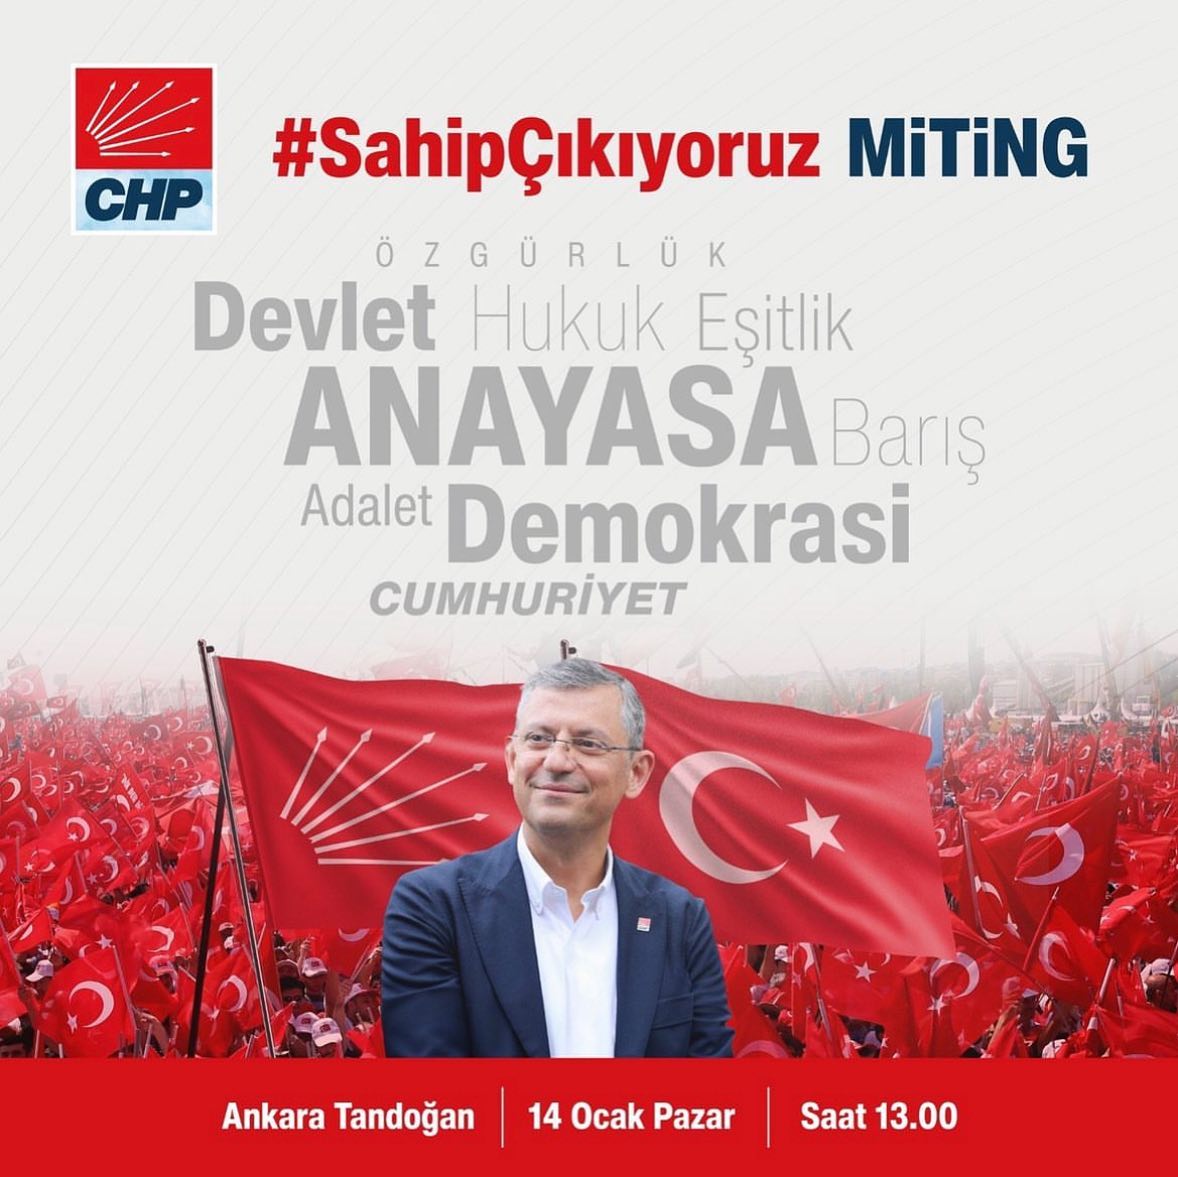 Tandoğan’da olacağız;Cumhuriyet için,Hukuk için,Demokrasi için,Barış için..@chp